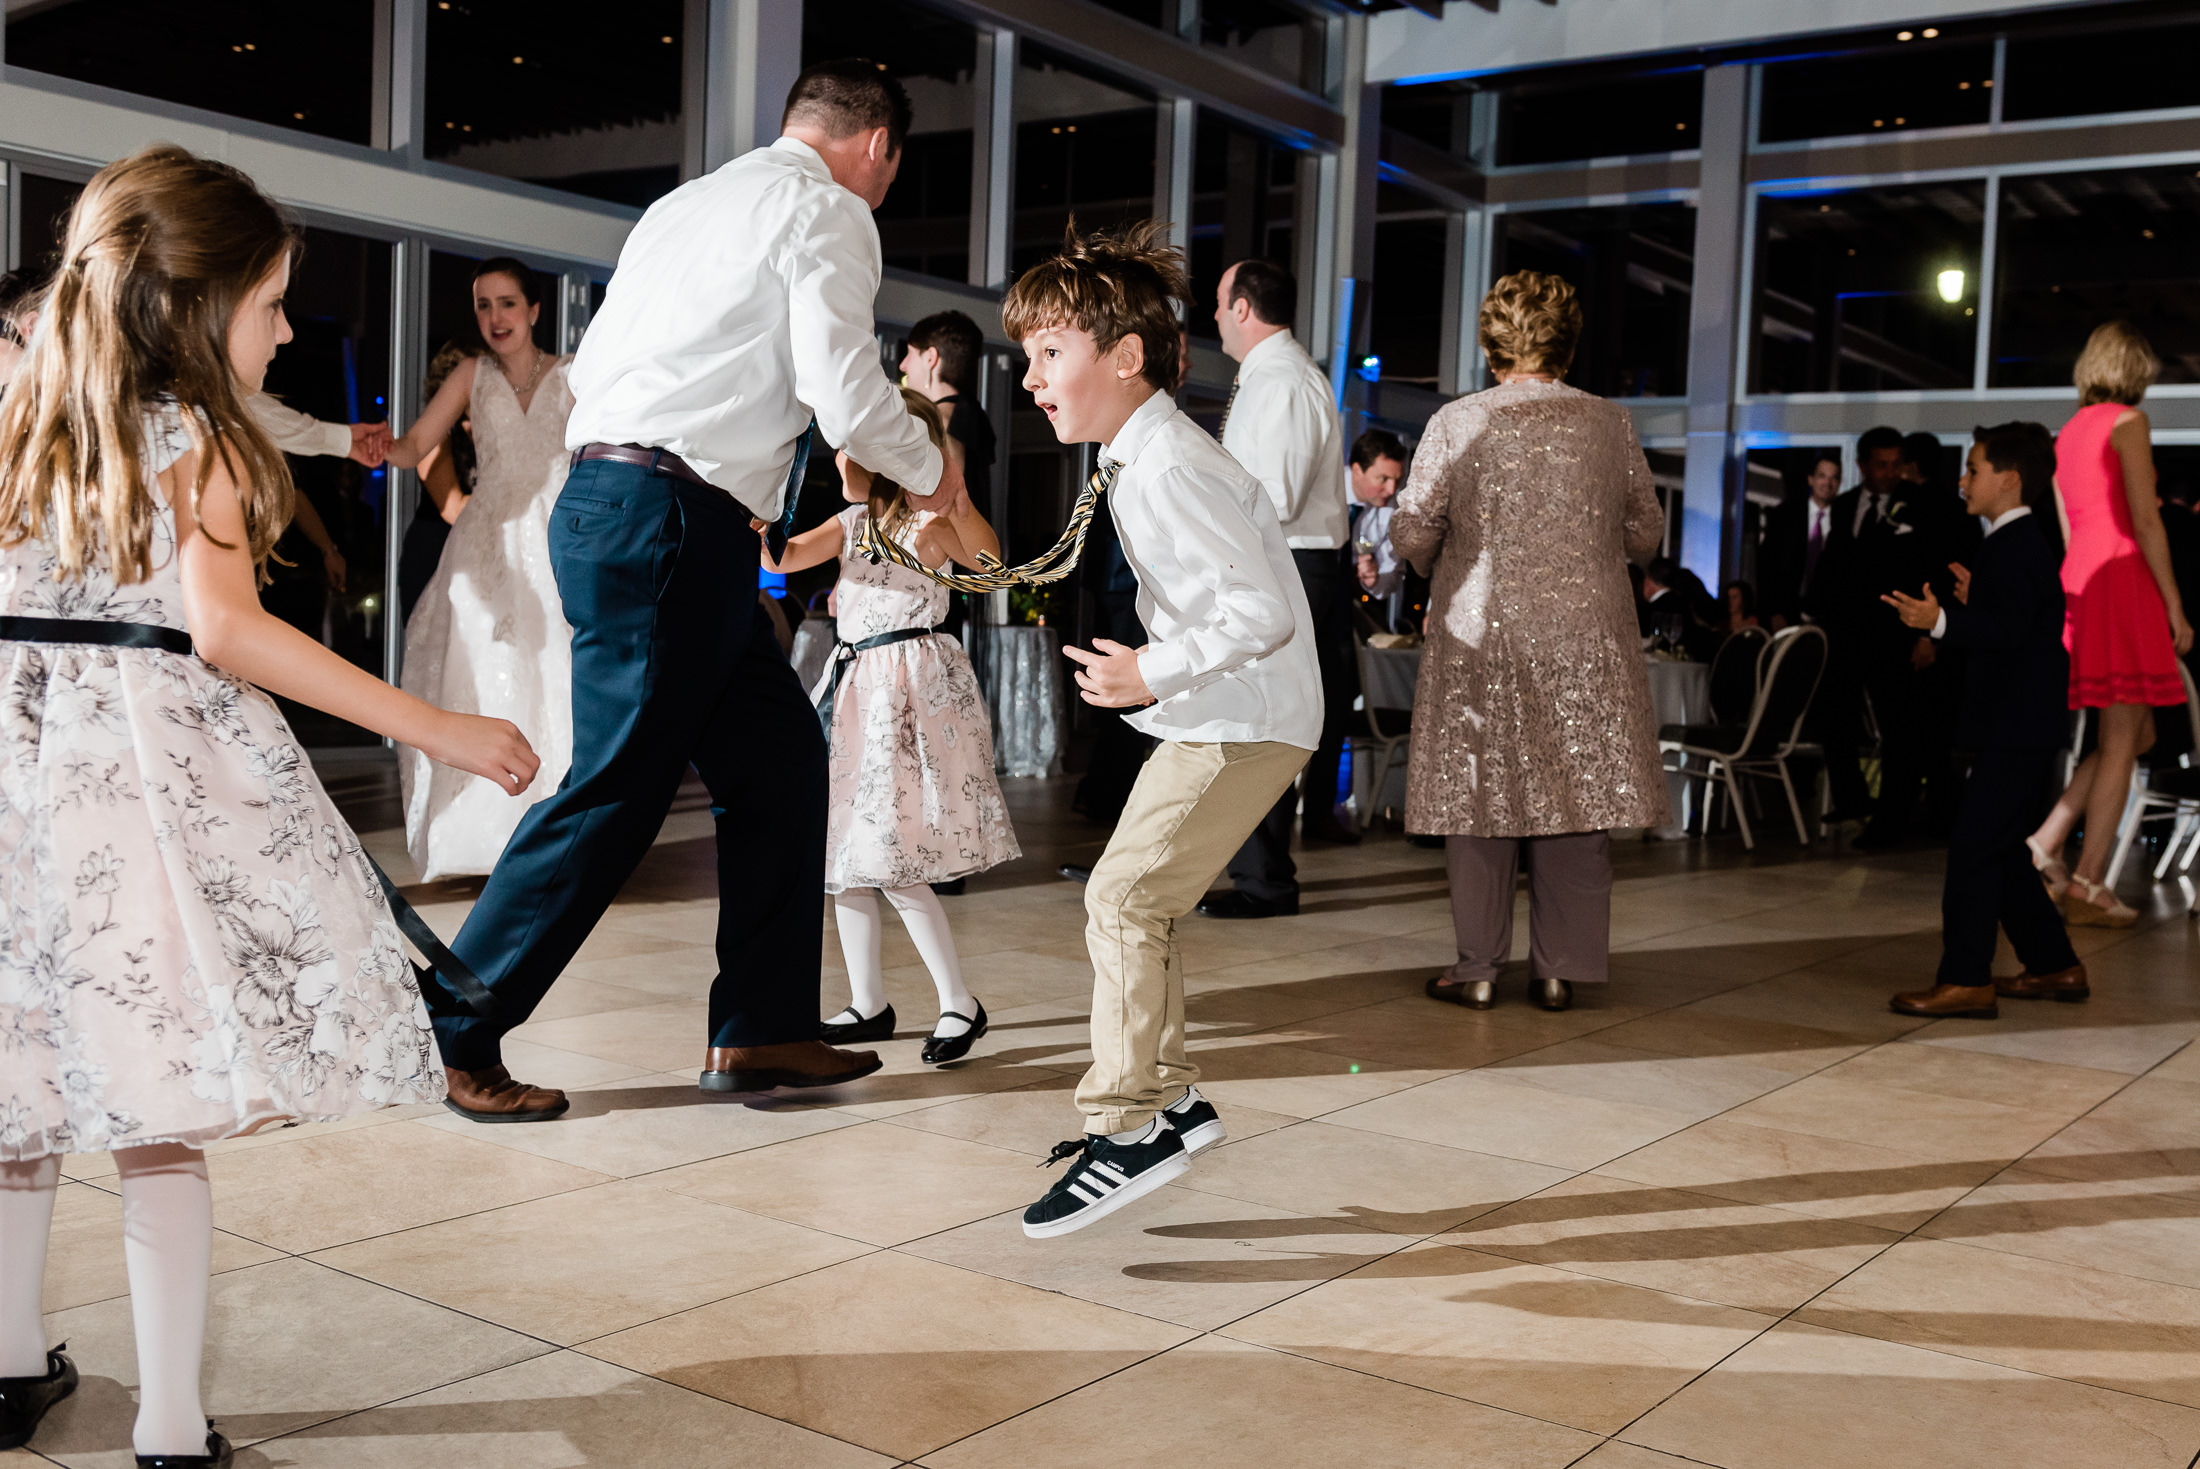 Kid dancing at lake pavilion wedding